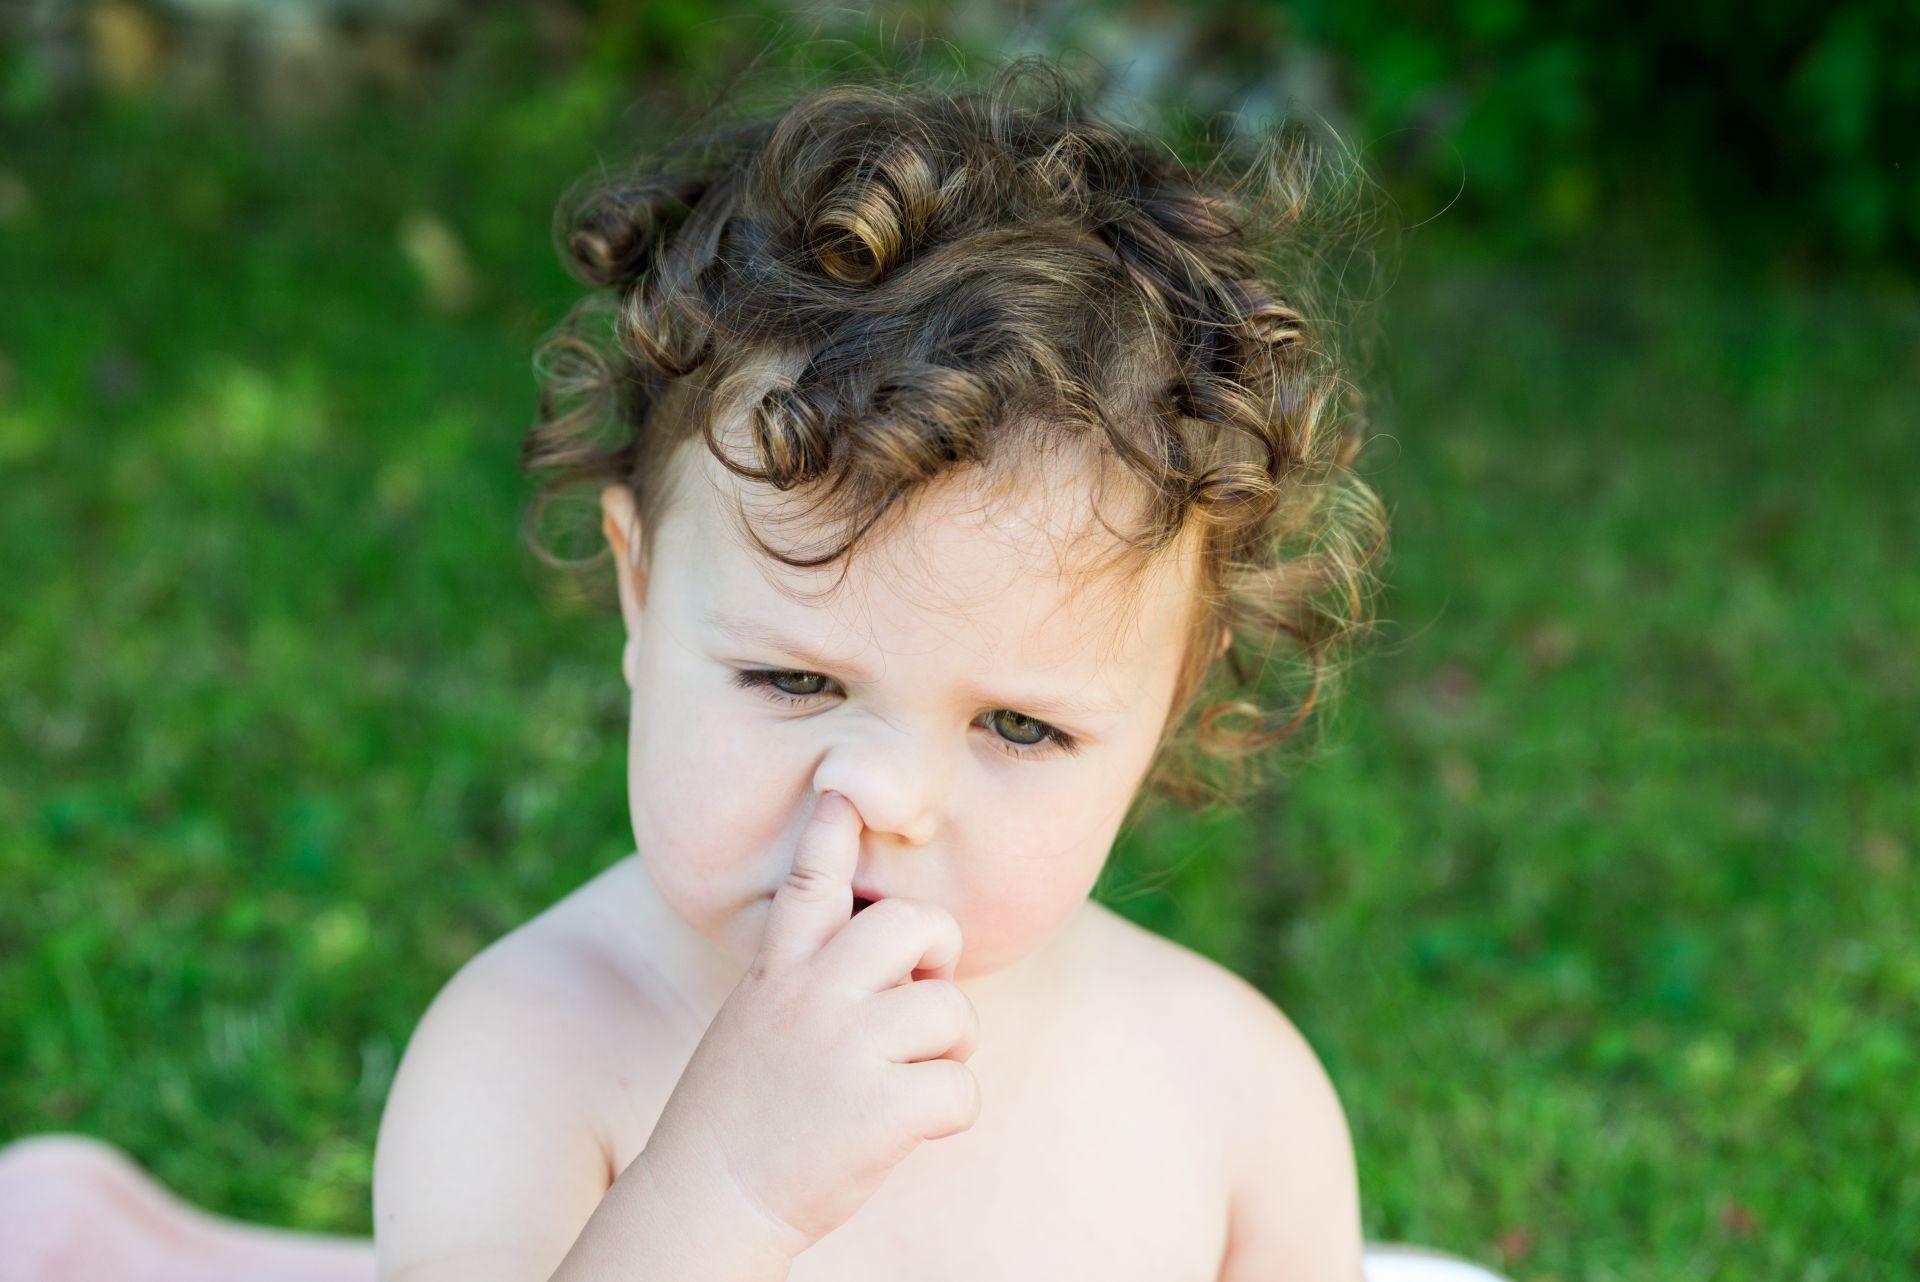 Haben Kinder sich erst einmal einen Gegenstand in die Nase gesteckt, ist die Gefahr, ihn bei unzulänglichen Entfernungsversuchen noch tiefer hineinzuschieben, gross.